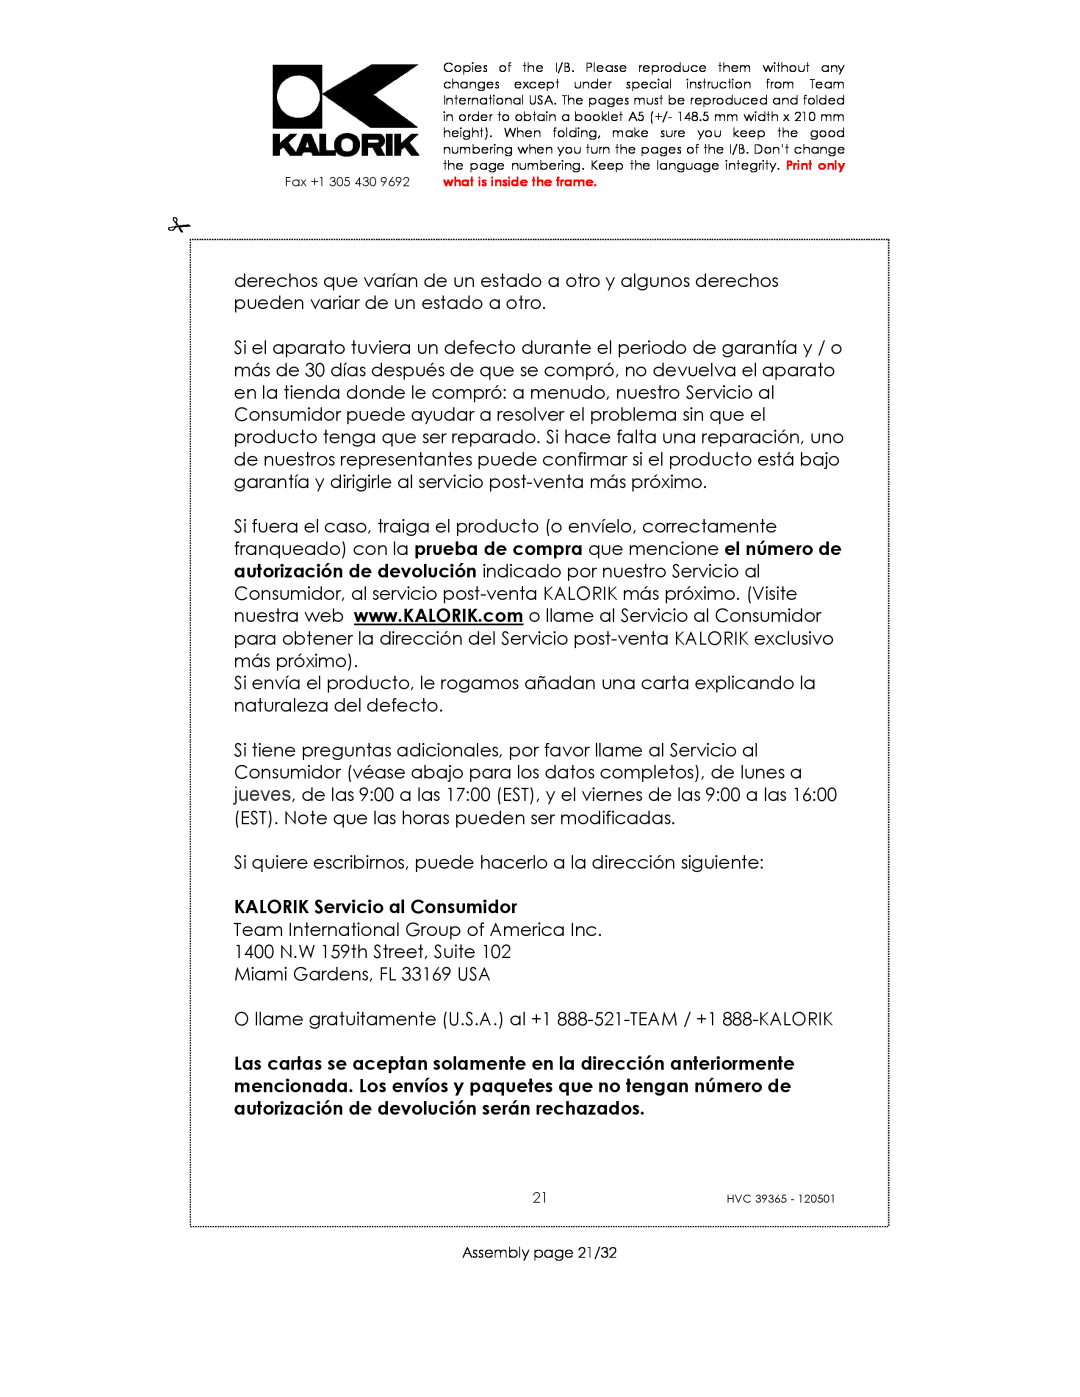 Kalorik HVC 39365 manual KALORIK Servicio al Consumidor 